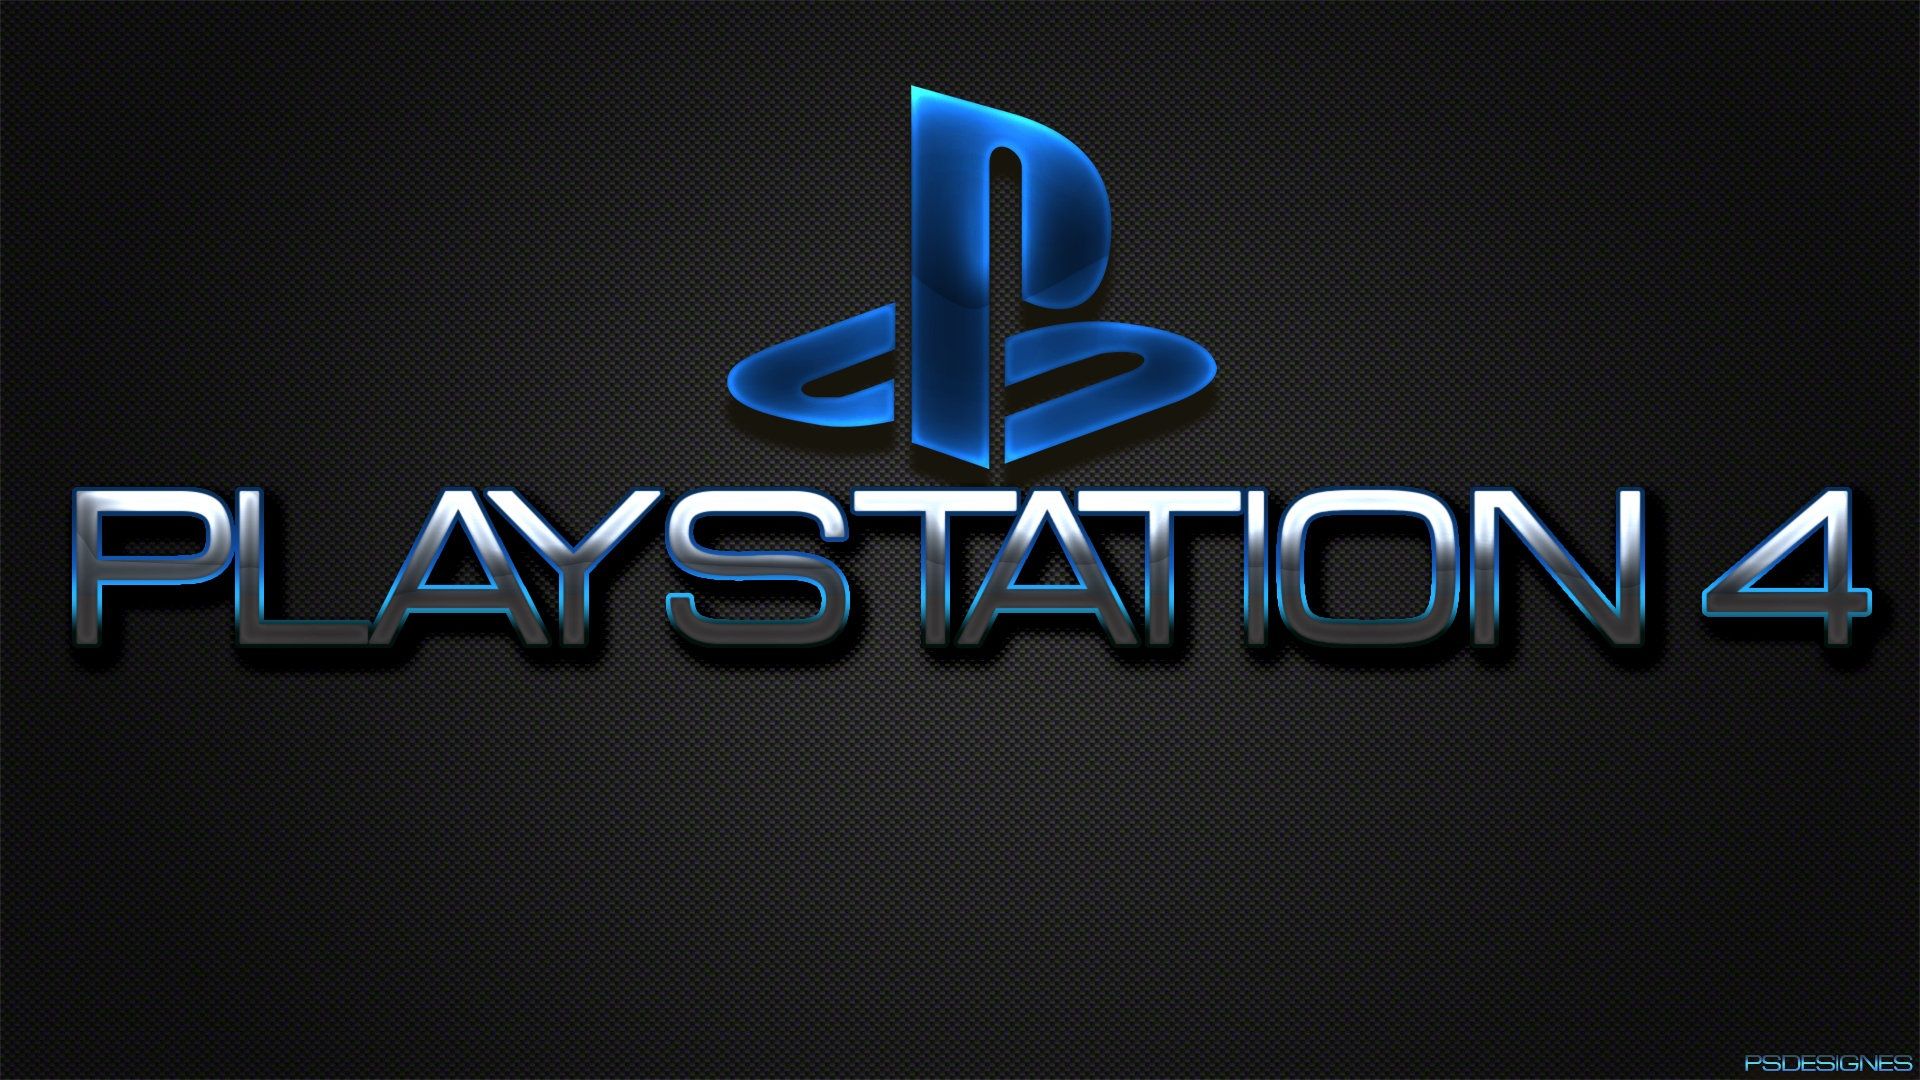 Playstation 4 Logos Wallpapers